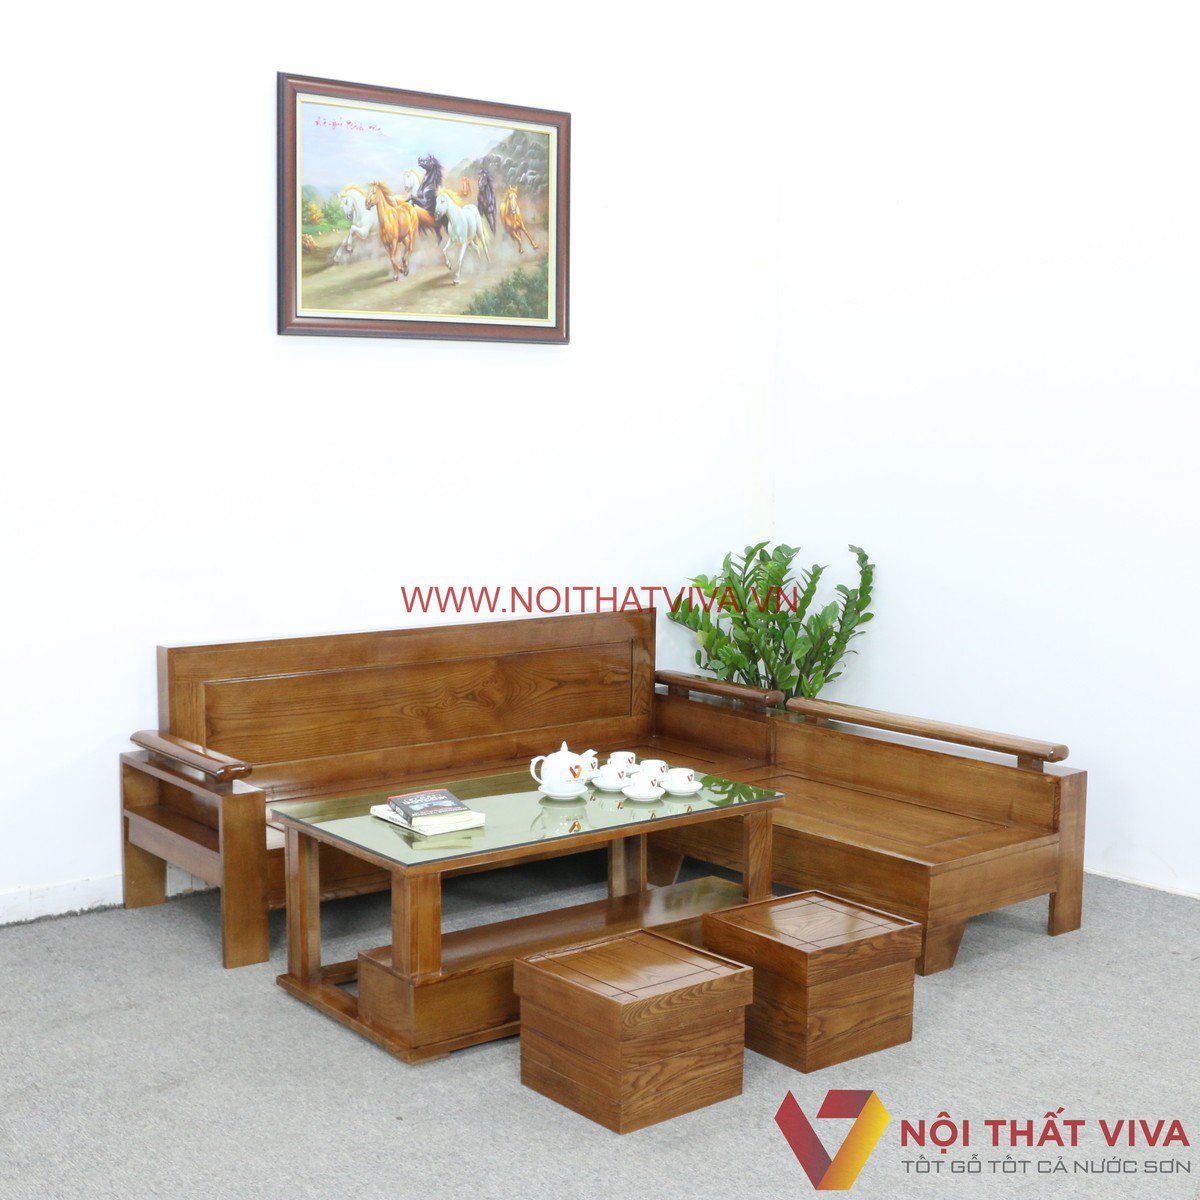 Những mẫu bàn ghế bằng gỗ phòng khách đẹp nhất hiện nay ⋆ Nội thất Dung Thủy